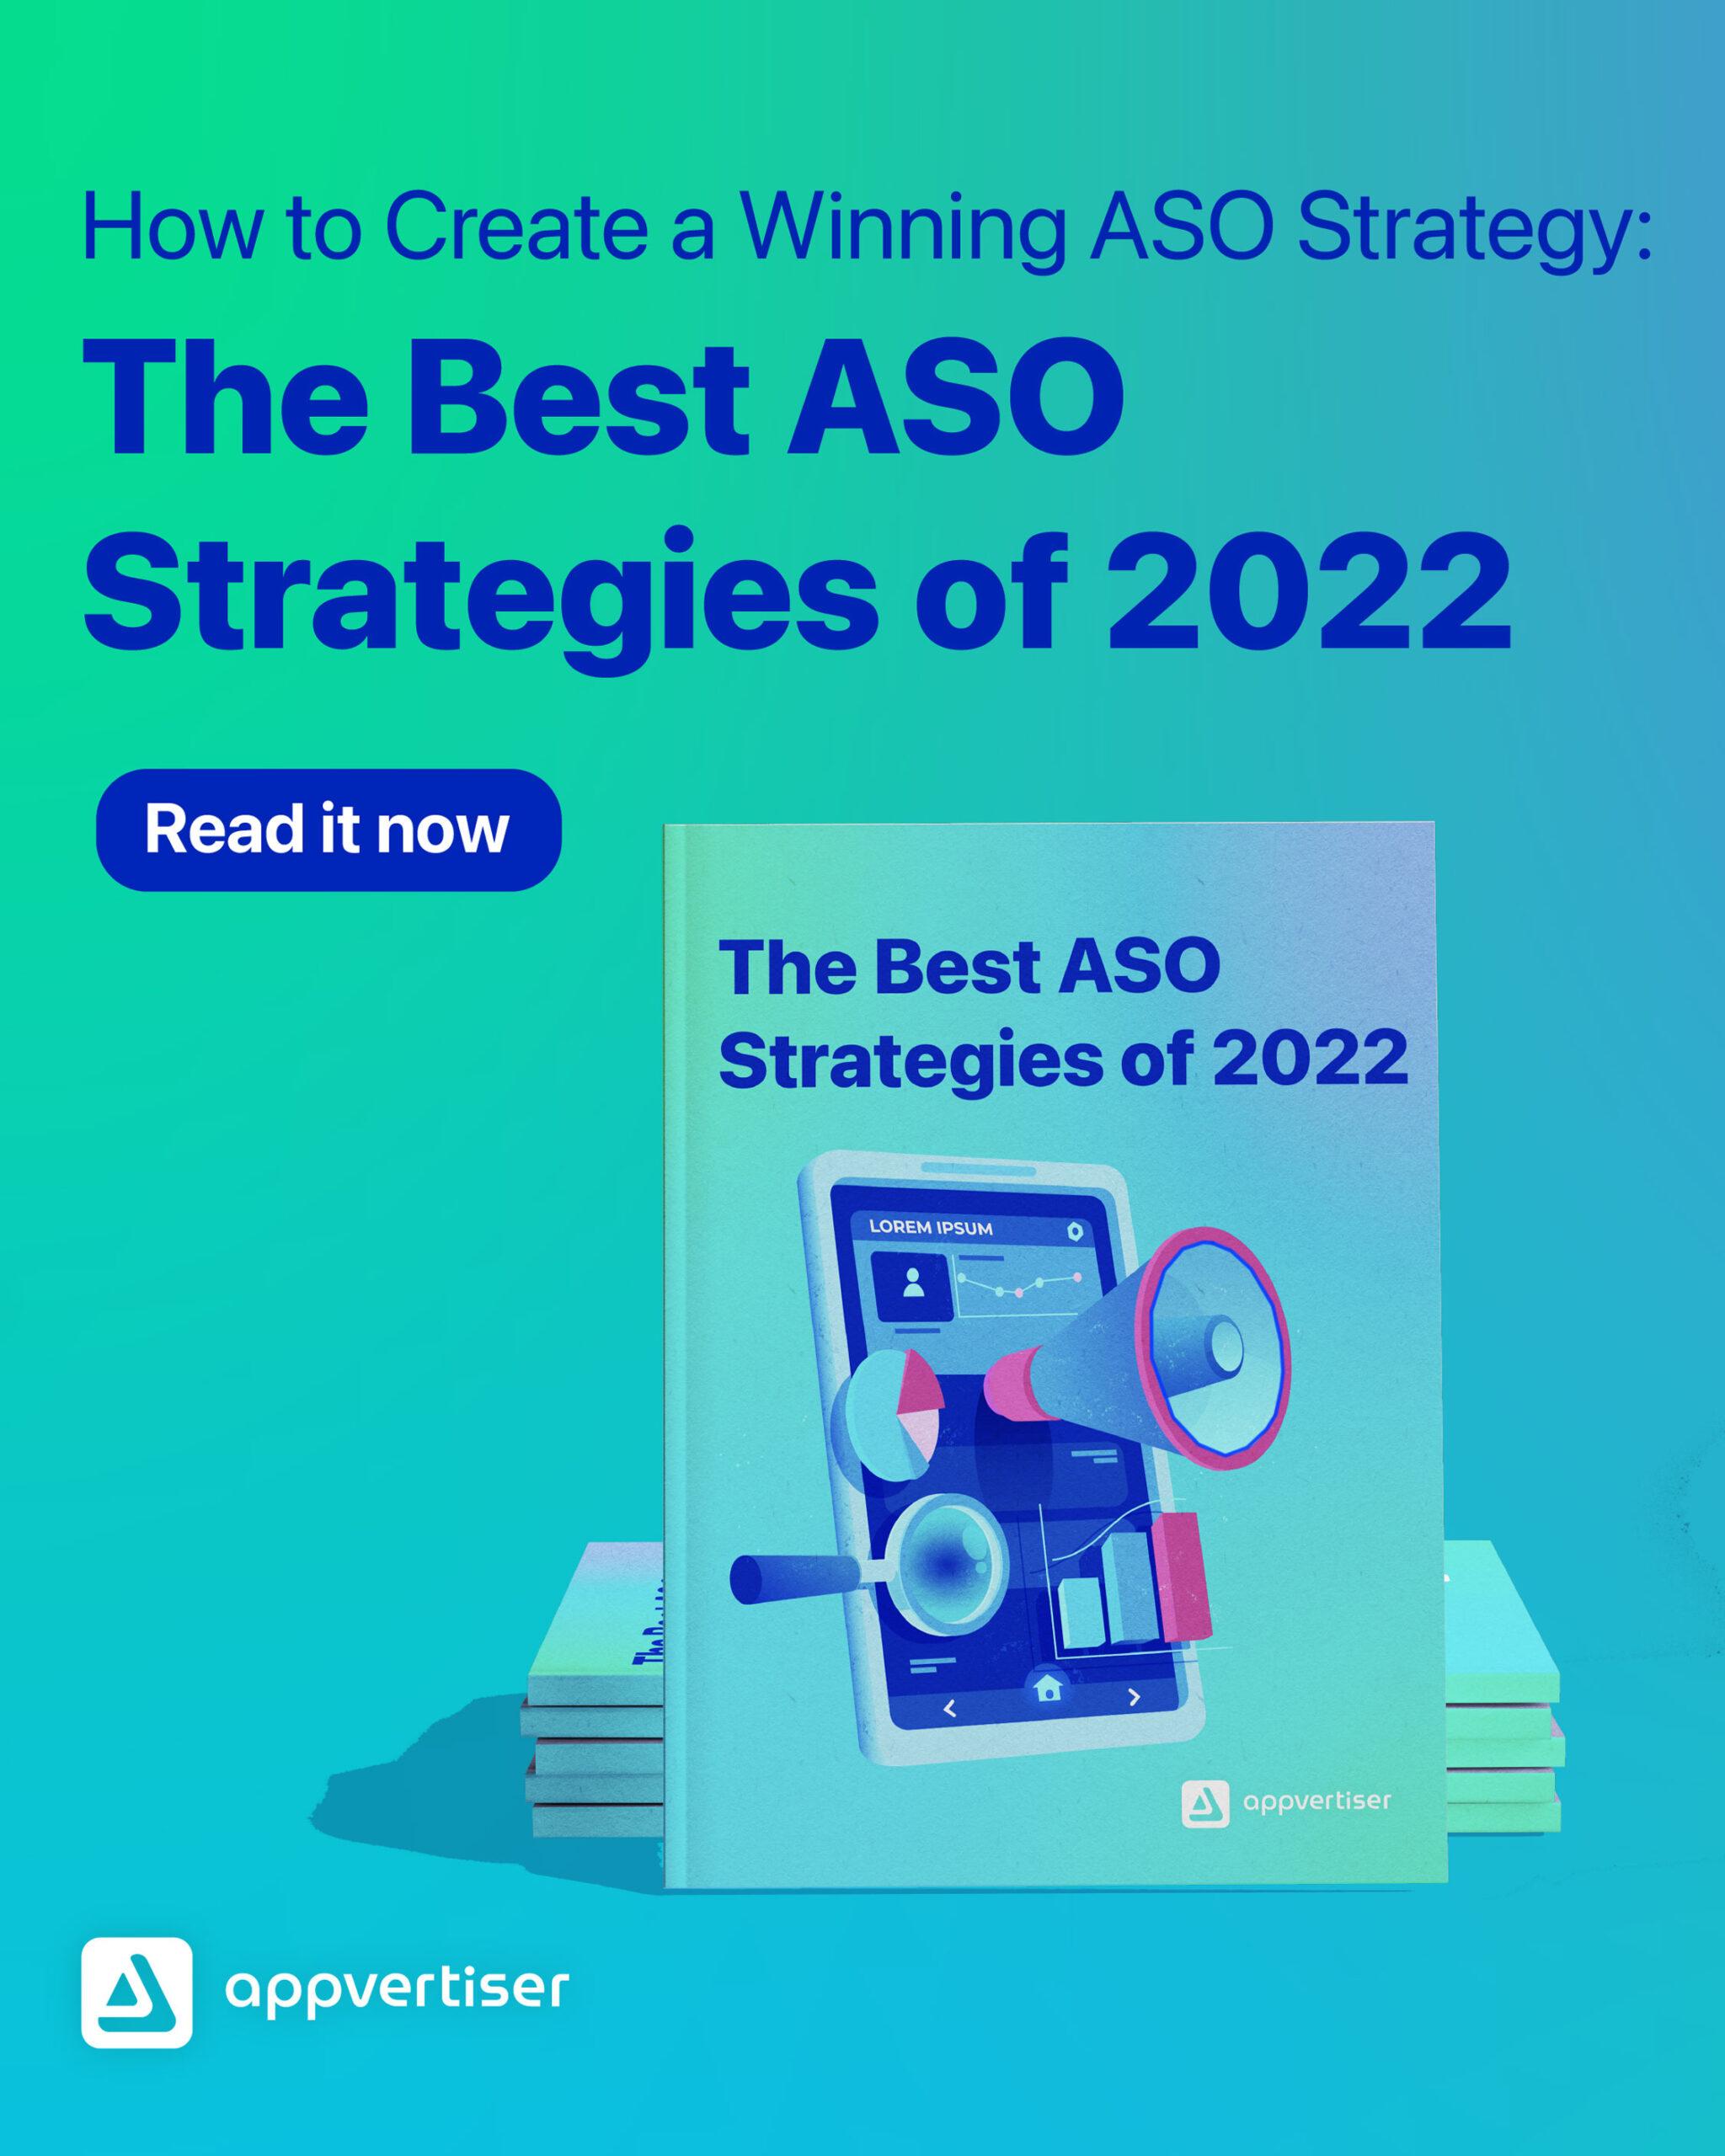 A winning ASO Strategy